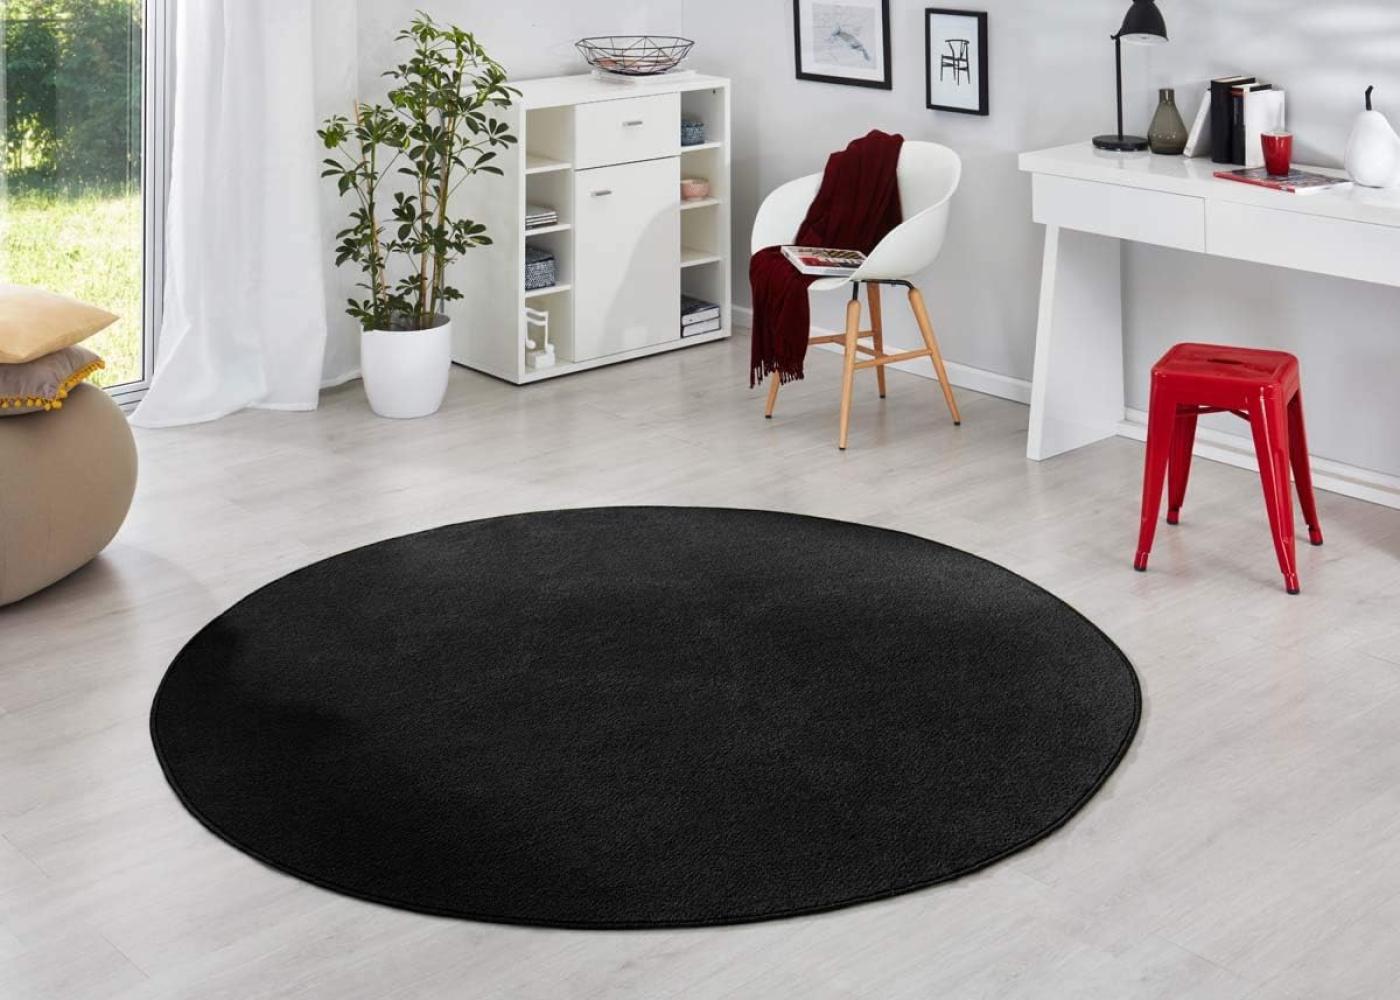 Runder Kurzflor Teppich Uni Fancy rund - schwarz - 133 cm Durchmesser Bild 1